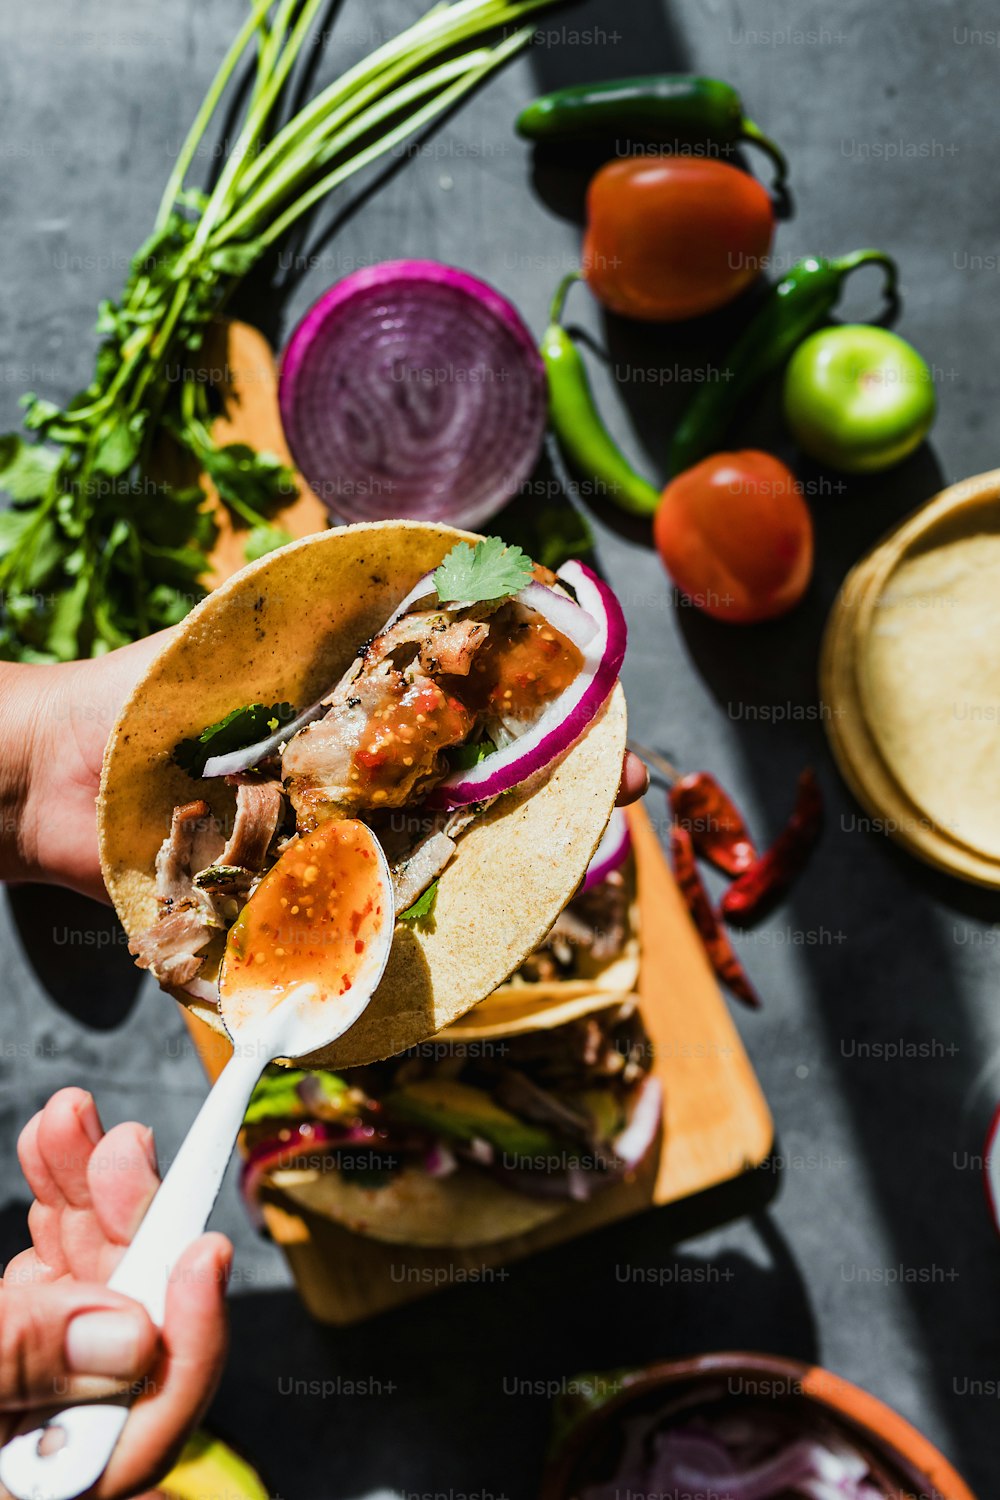 Lateinische Frauenhände bereiten mexikanische Tacos mit Schweinefleisch-Carnitas, Avocado, Zwiebeln, Koriander und roter Sauce in Mexiko zu